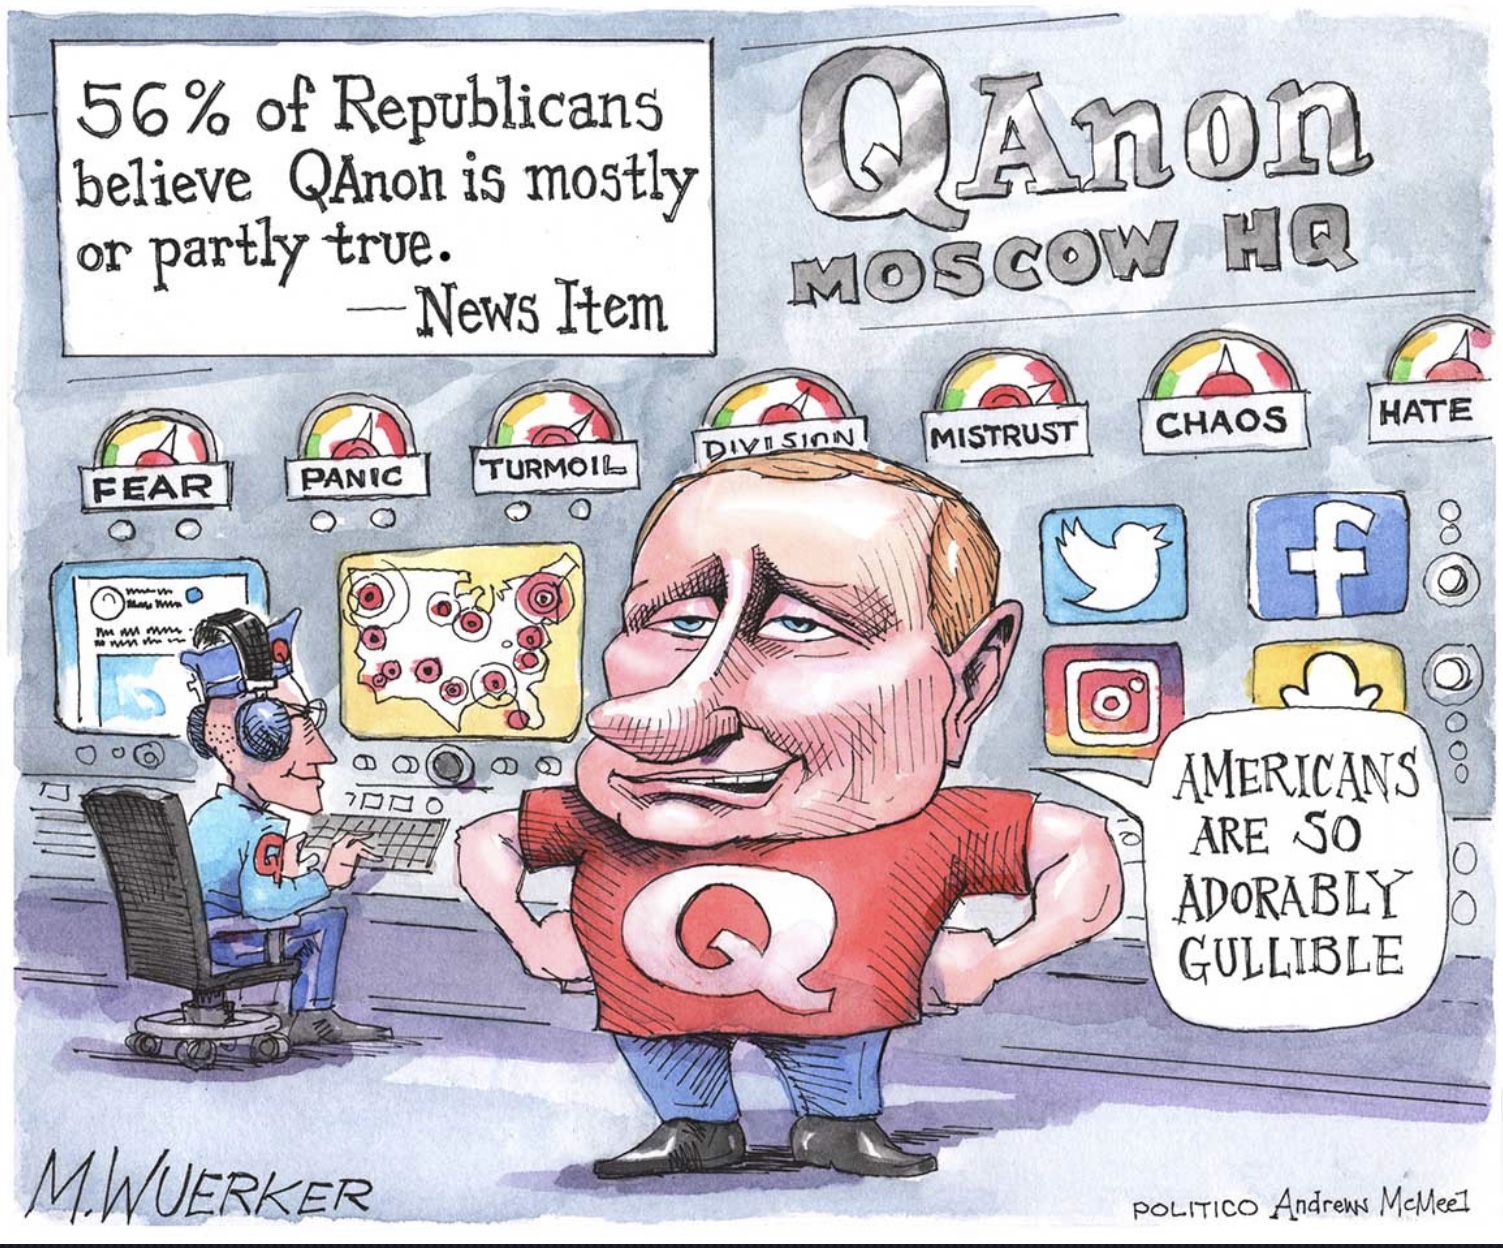 Political cartoons - the 'funny' pics thread.-329675c9-679e-4d4d-8784-3ad06032e422-jpeg